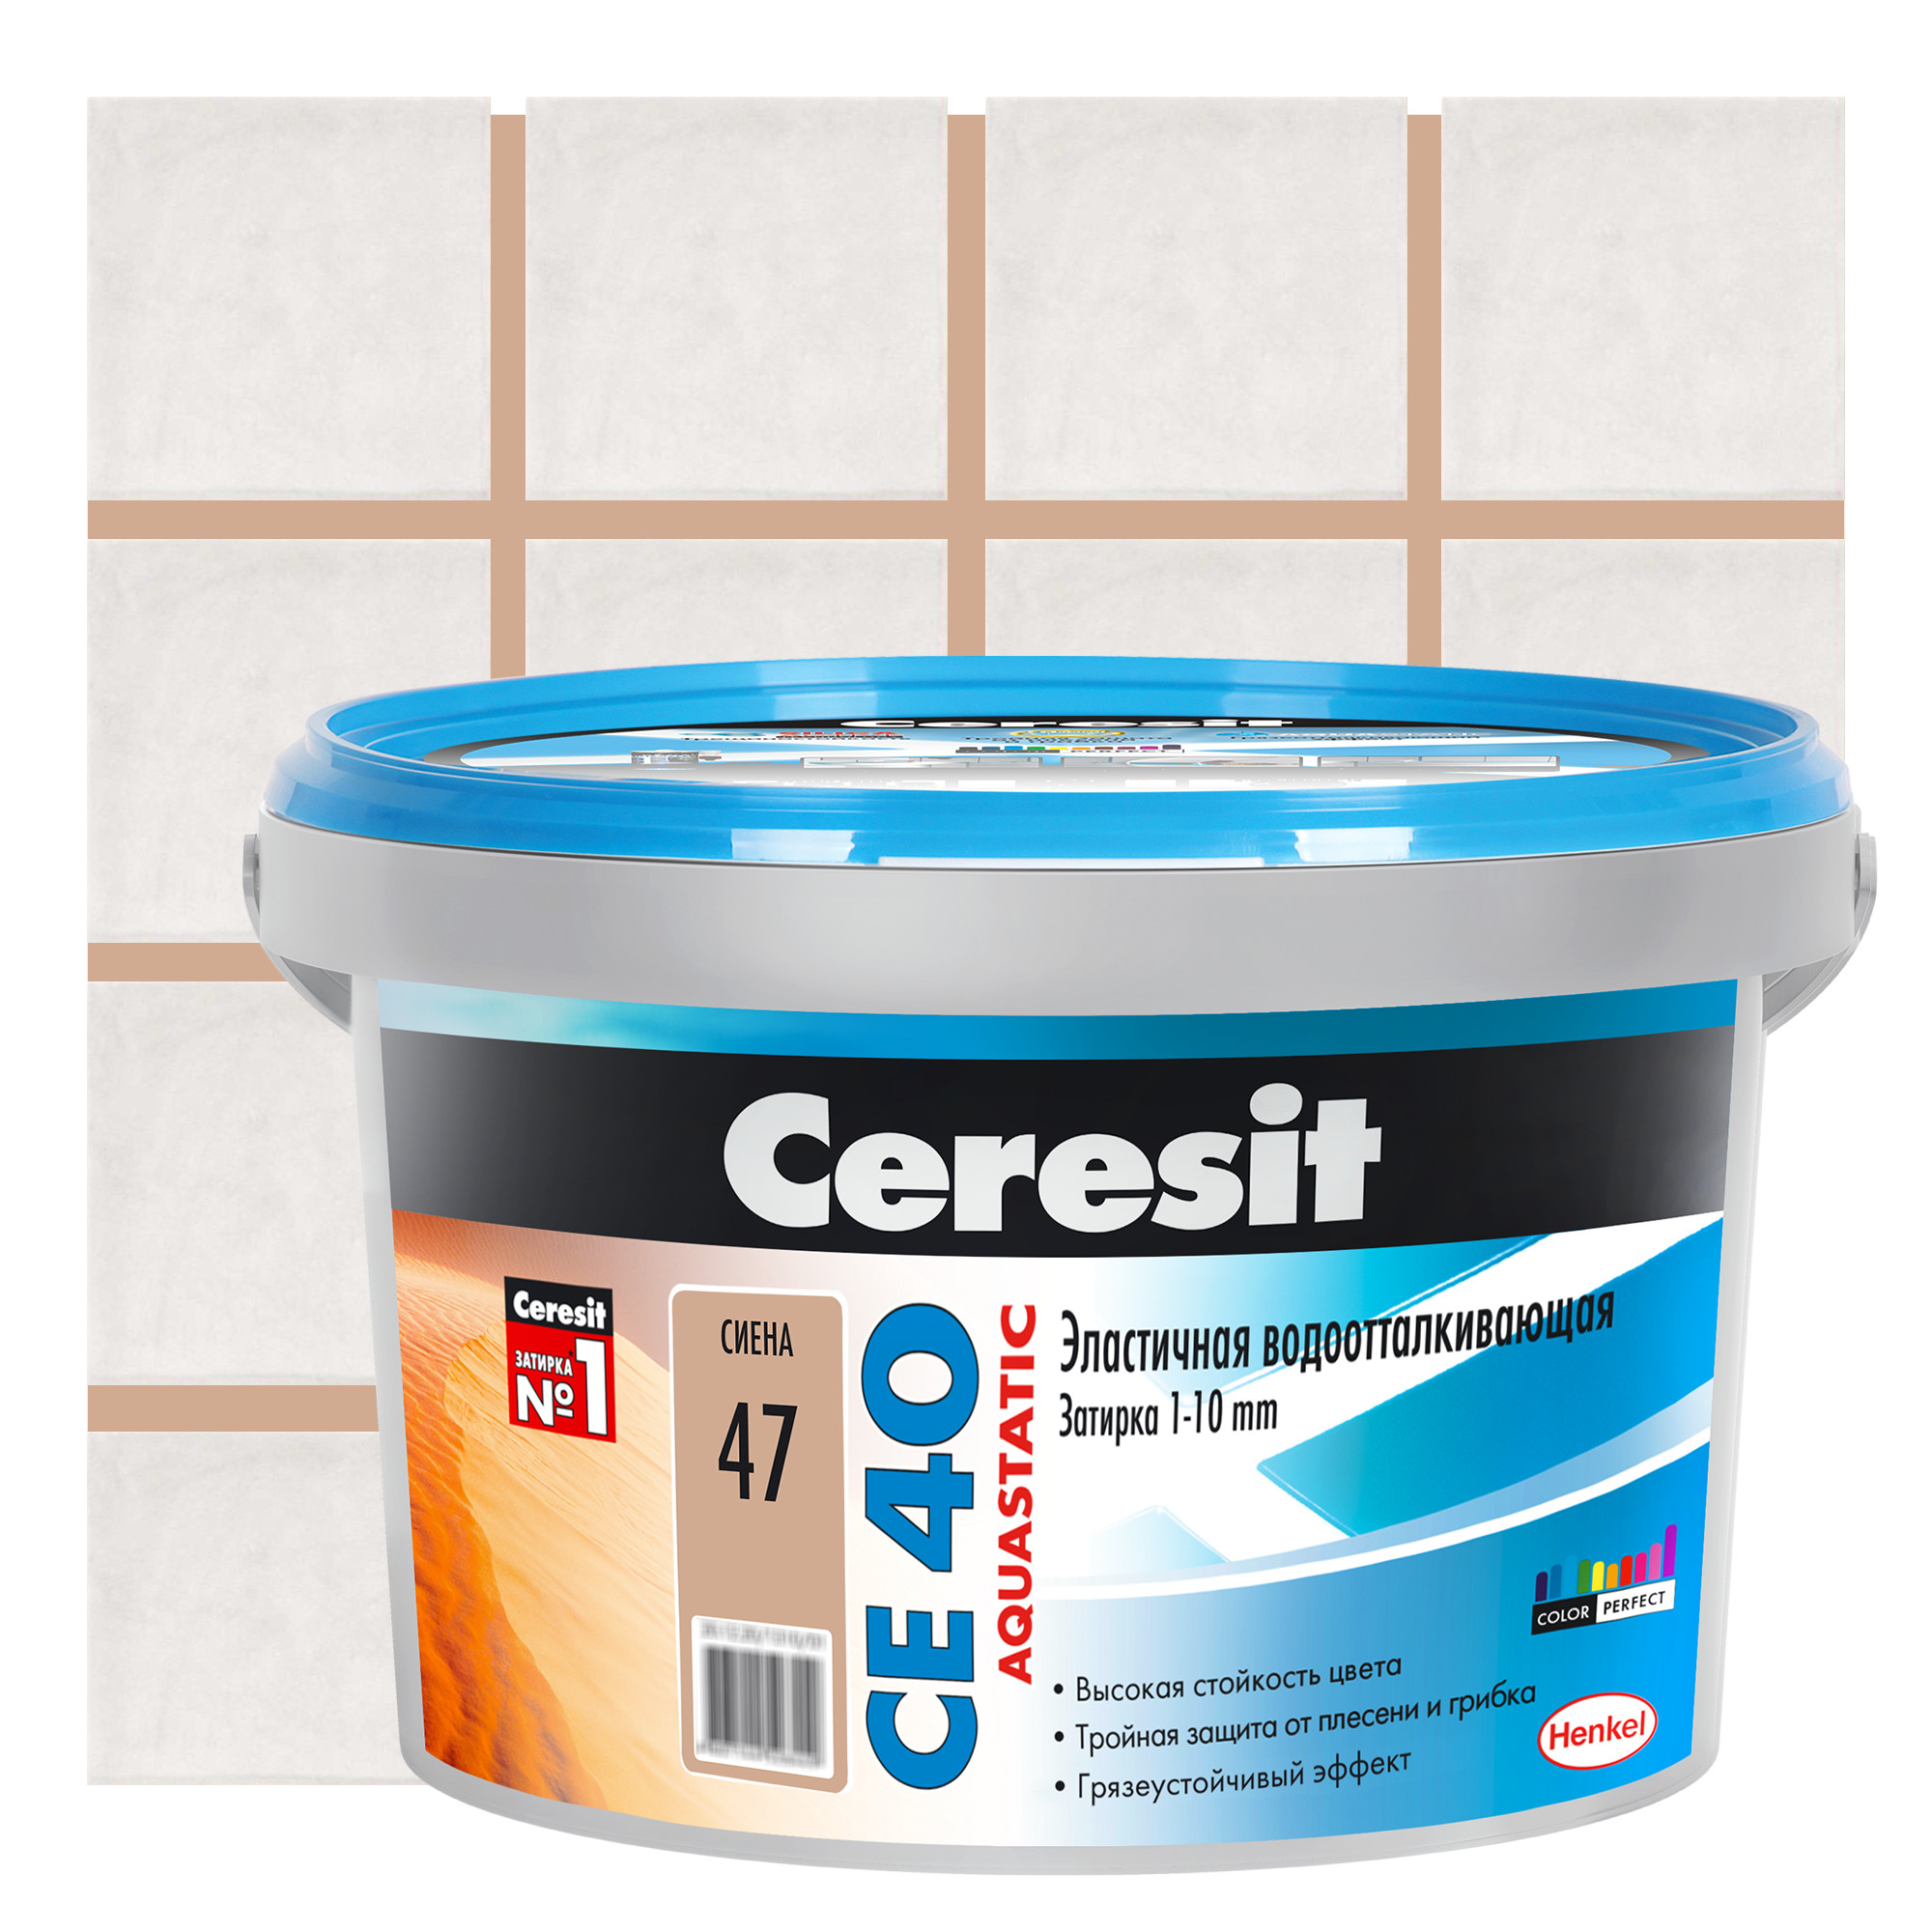  цементная Церезит CE 40 водоотталкивающая цвет сиена 2 кг .